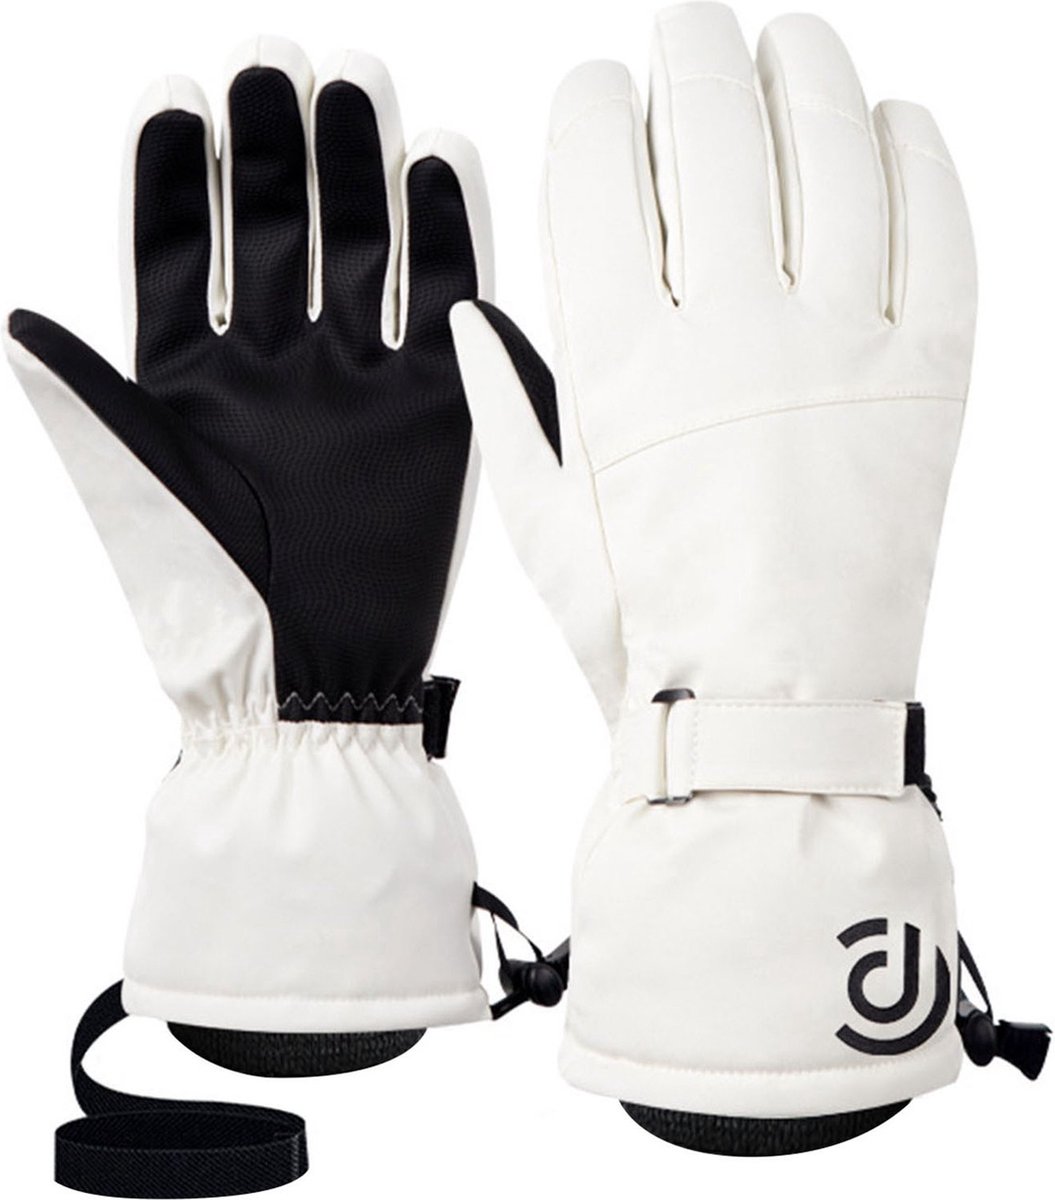 Ski handschoenen - Wit - Maat XL